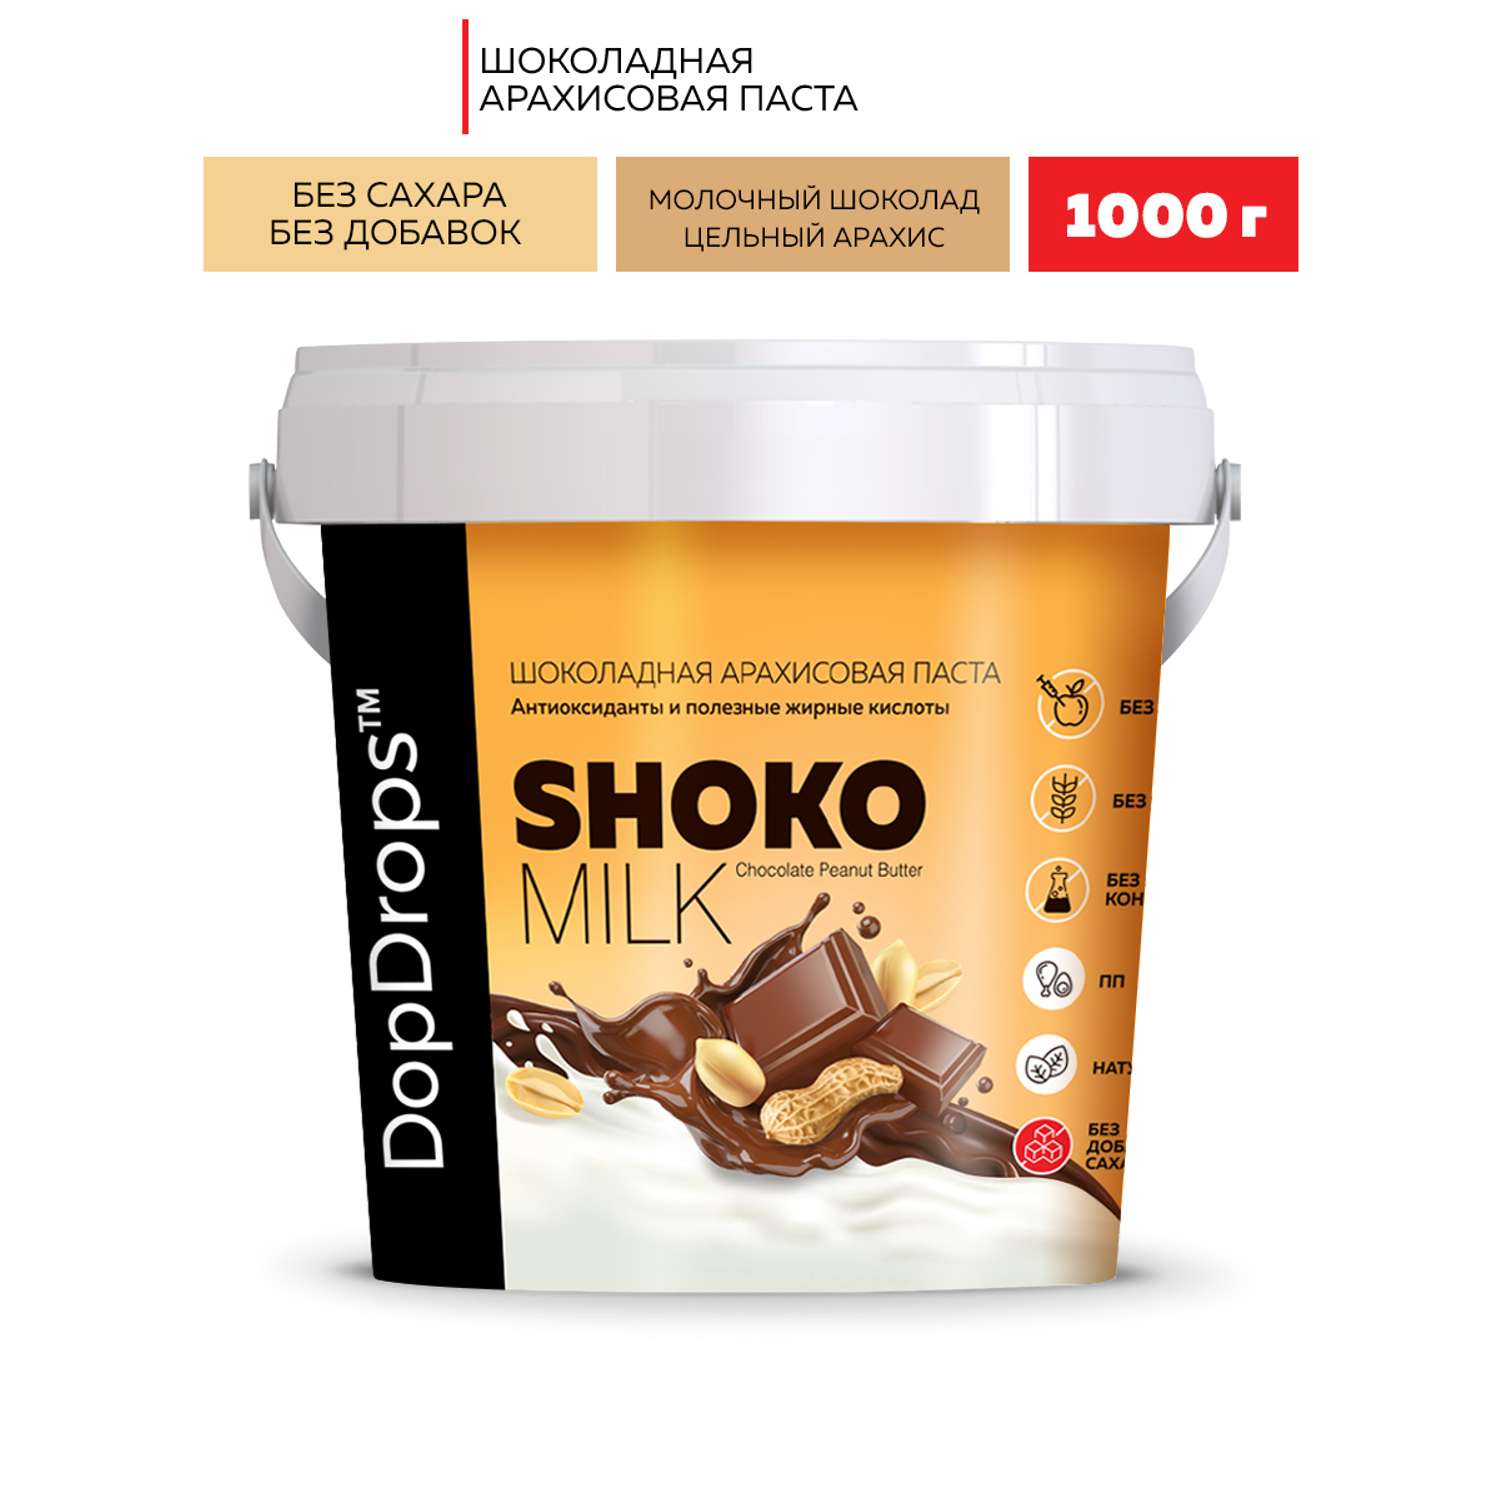 Шоколадная ореховая паста DopDrops Shoko Milk арахисовая без сахара 1000 г - фото 1